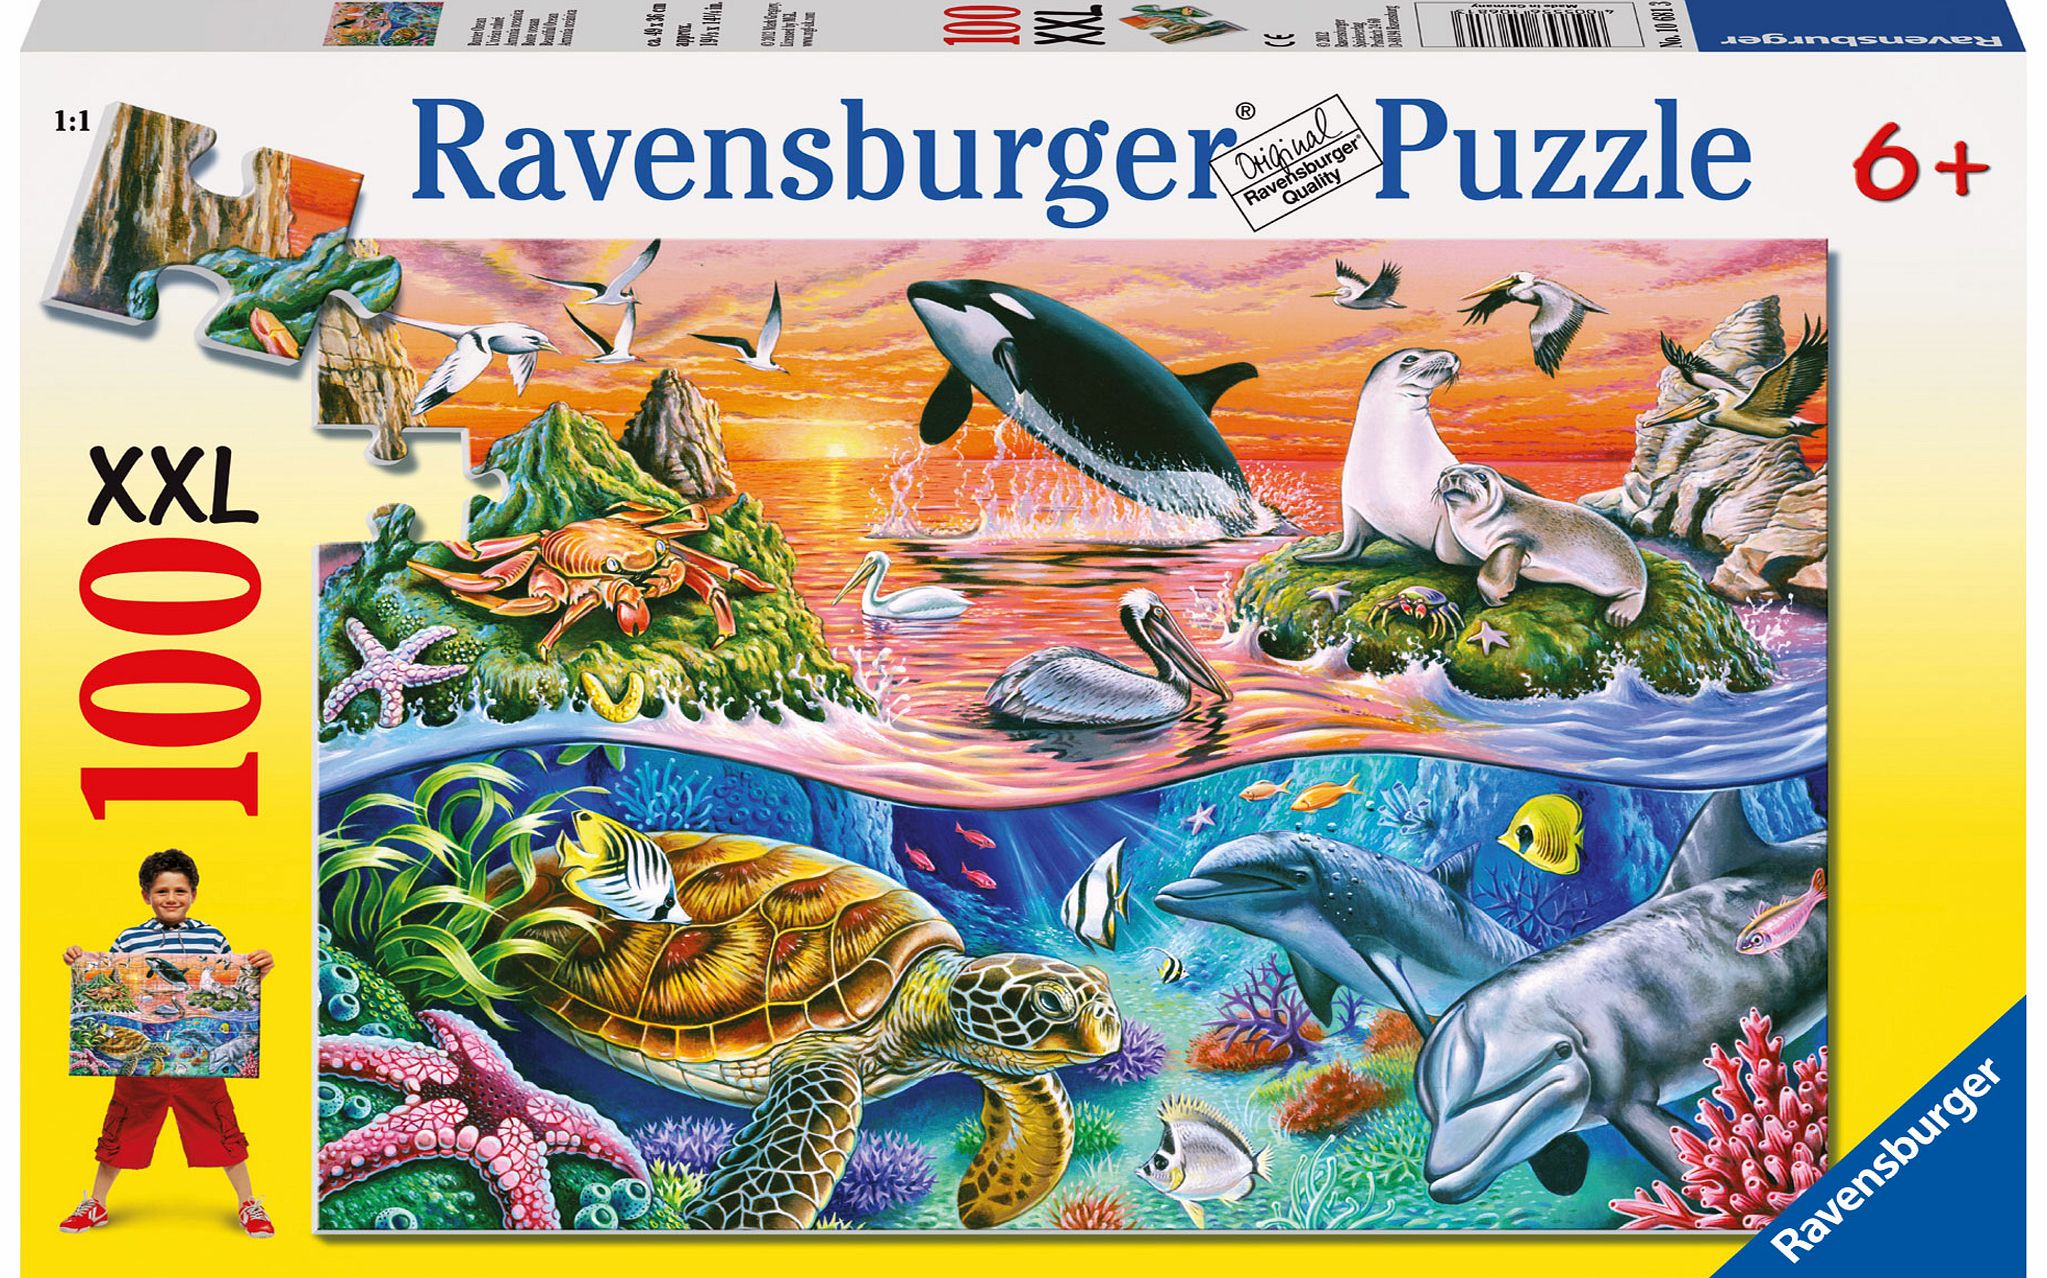 Ravensburger Underwater 100 Piece Jigsaw Puzzle - XXL